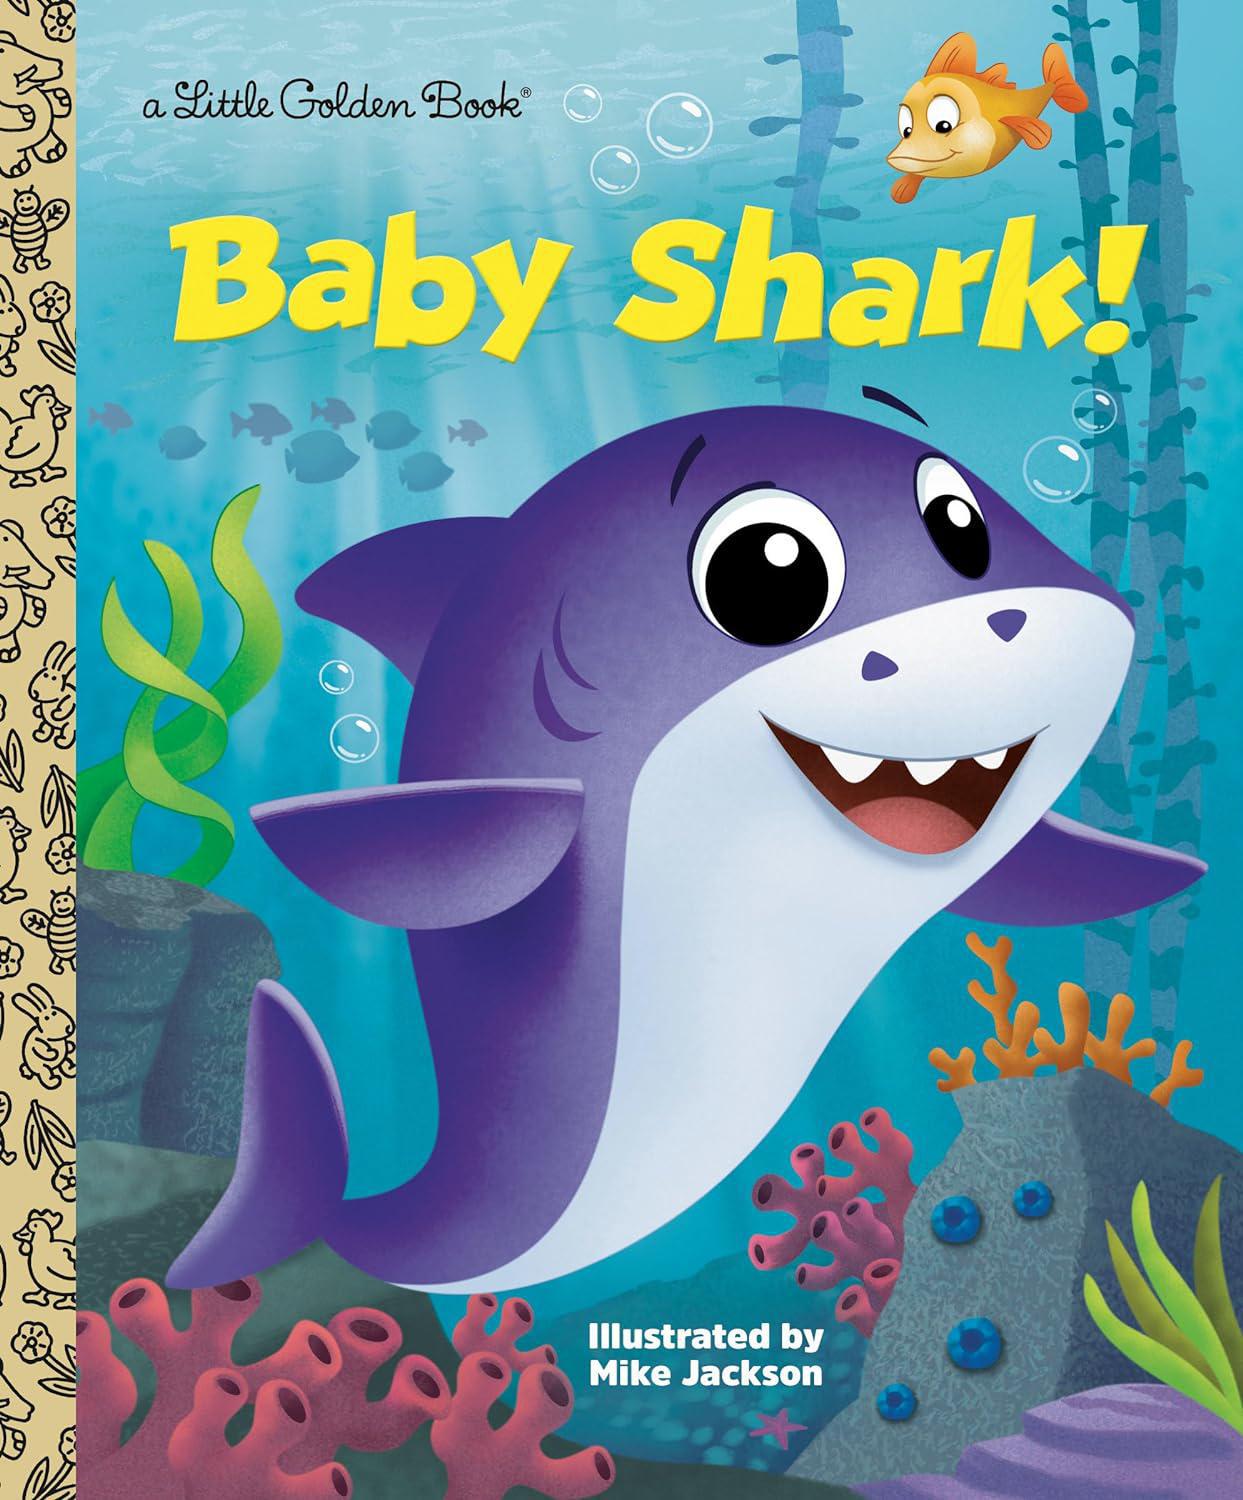 Baby Shark! -Little Golden Book